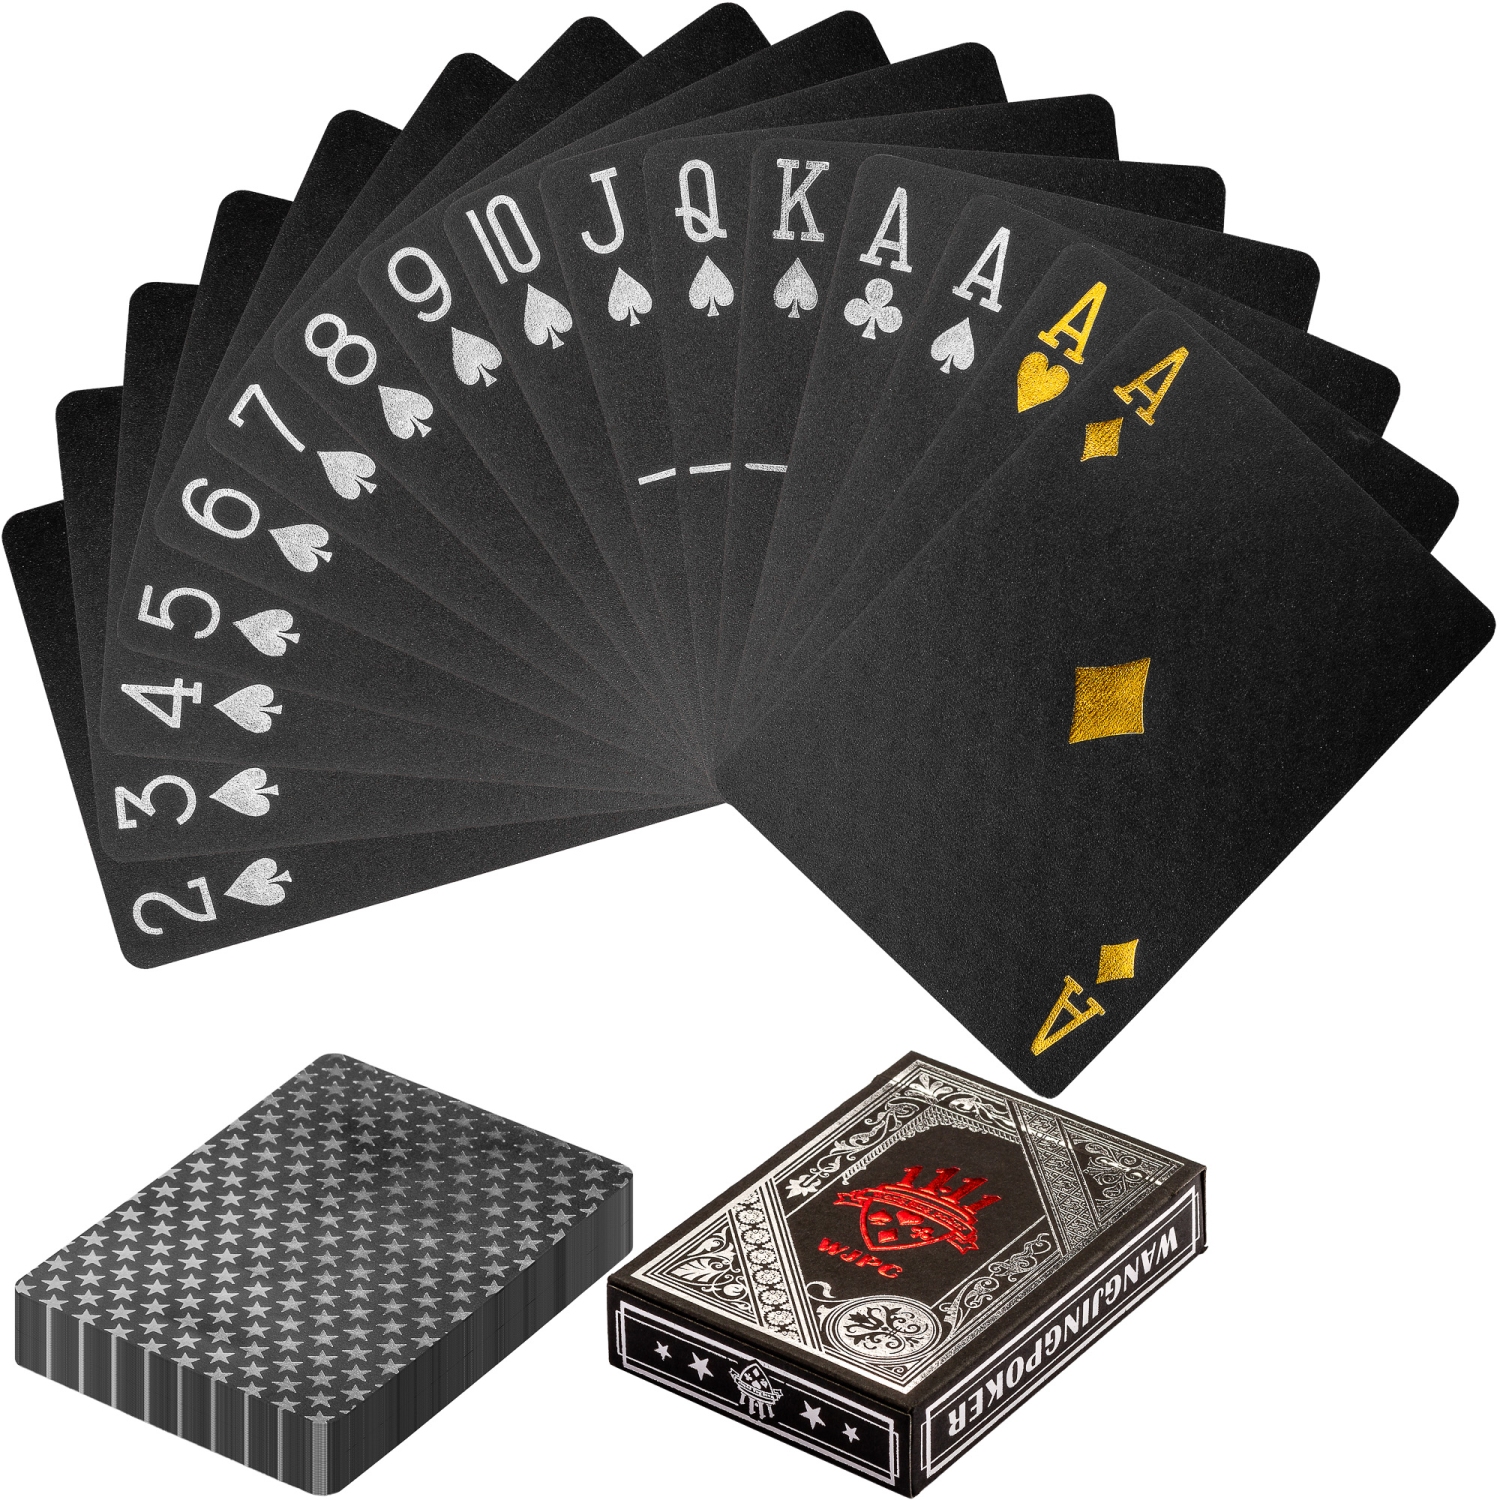 Poker kaarten – Spelkaarten – Luxe set – 88 mm x 63 mm – Zwart – Zilver